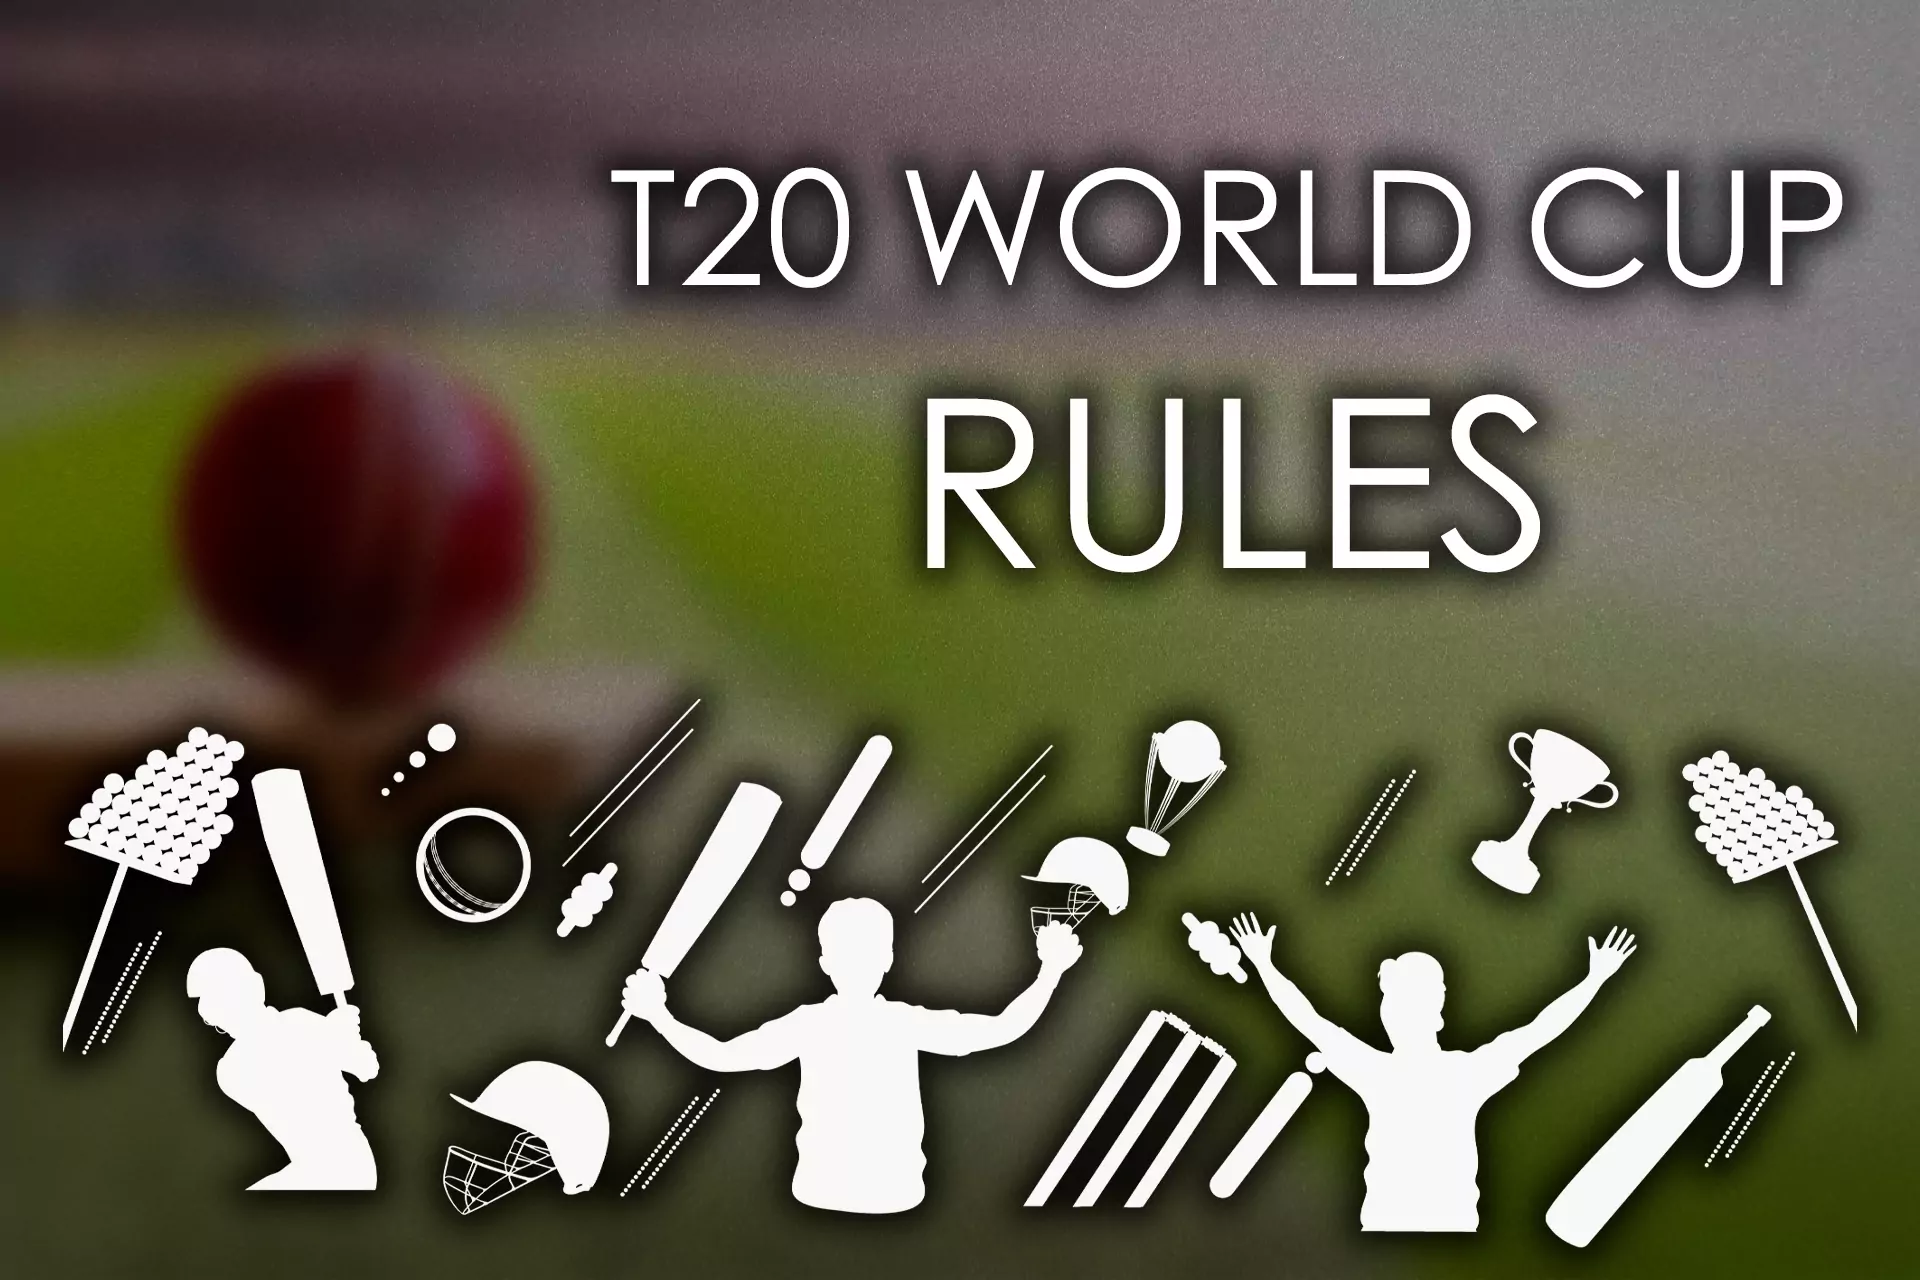 टी20 विश्व कप के नियम क्रिकेट टूर्नामेंट के सामान्य नियमों के काफी करीब हैं, लेकिन टी20 में कुछ अंतर हैं।